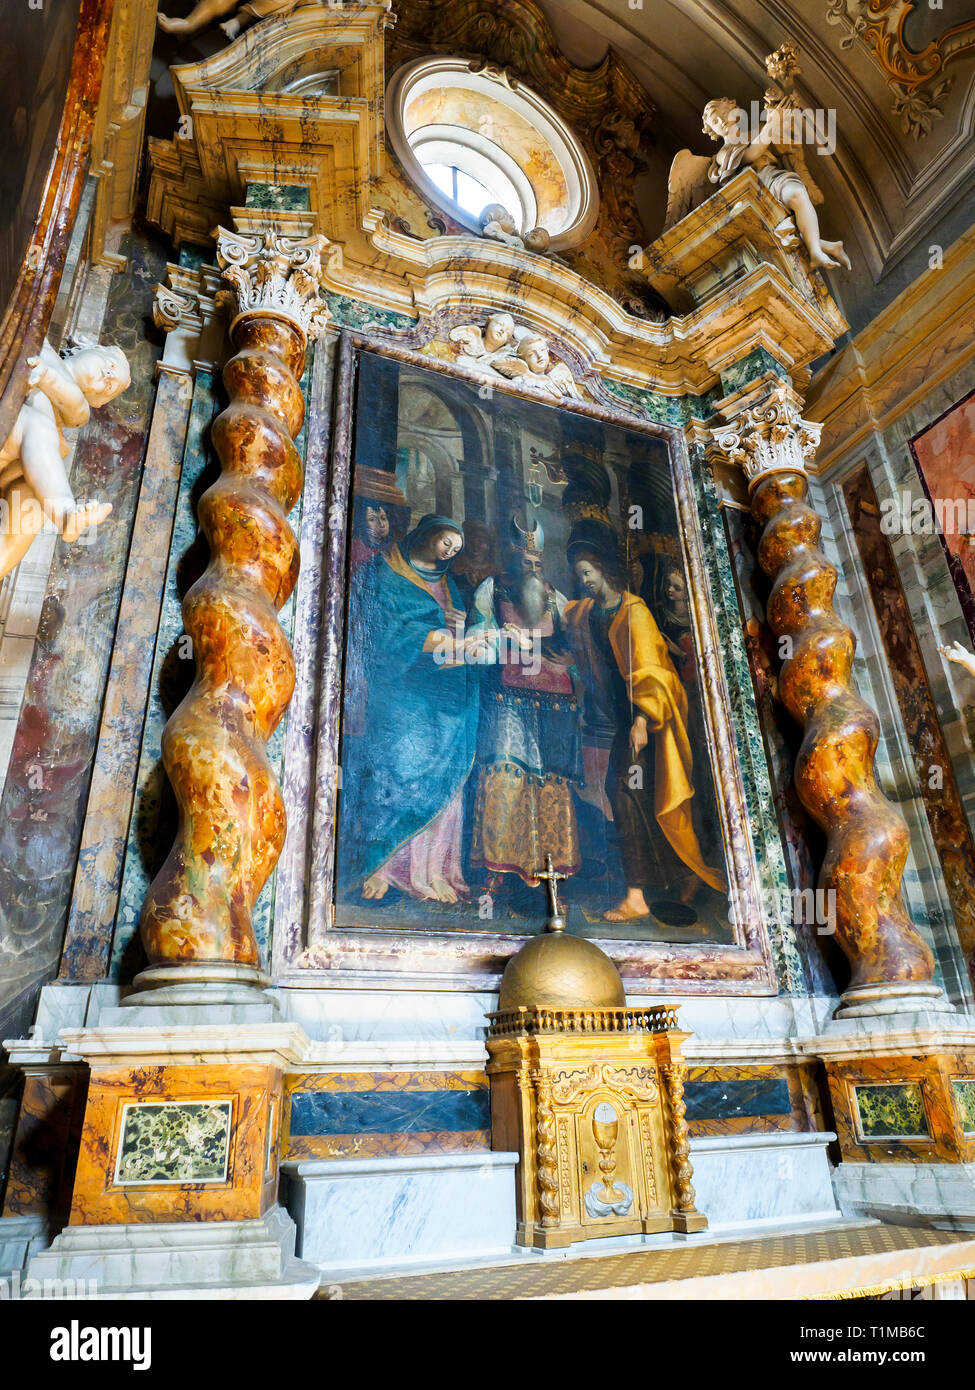 Lo sposalizio della Vergine (die Ehe der Jungfrau) von Pietro Vannucci als "Il Perugino" (1450 - 1523) - St St Gervasius und Protasius Kirche bekannt, Città della Pieve, Perugia, Italien Stockfoto